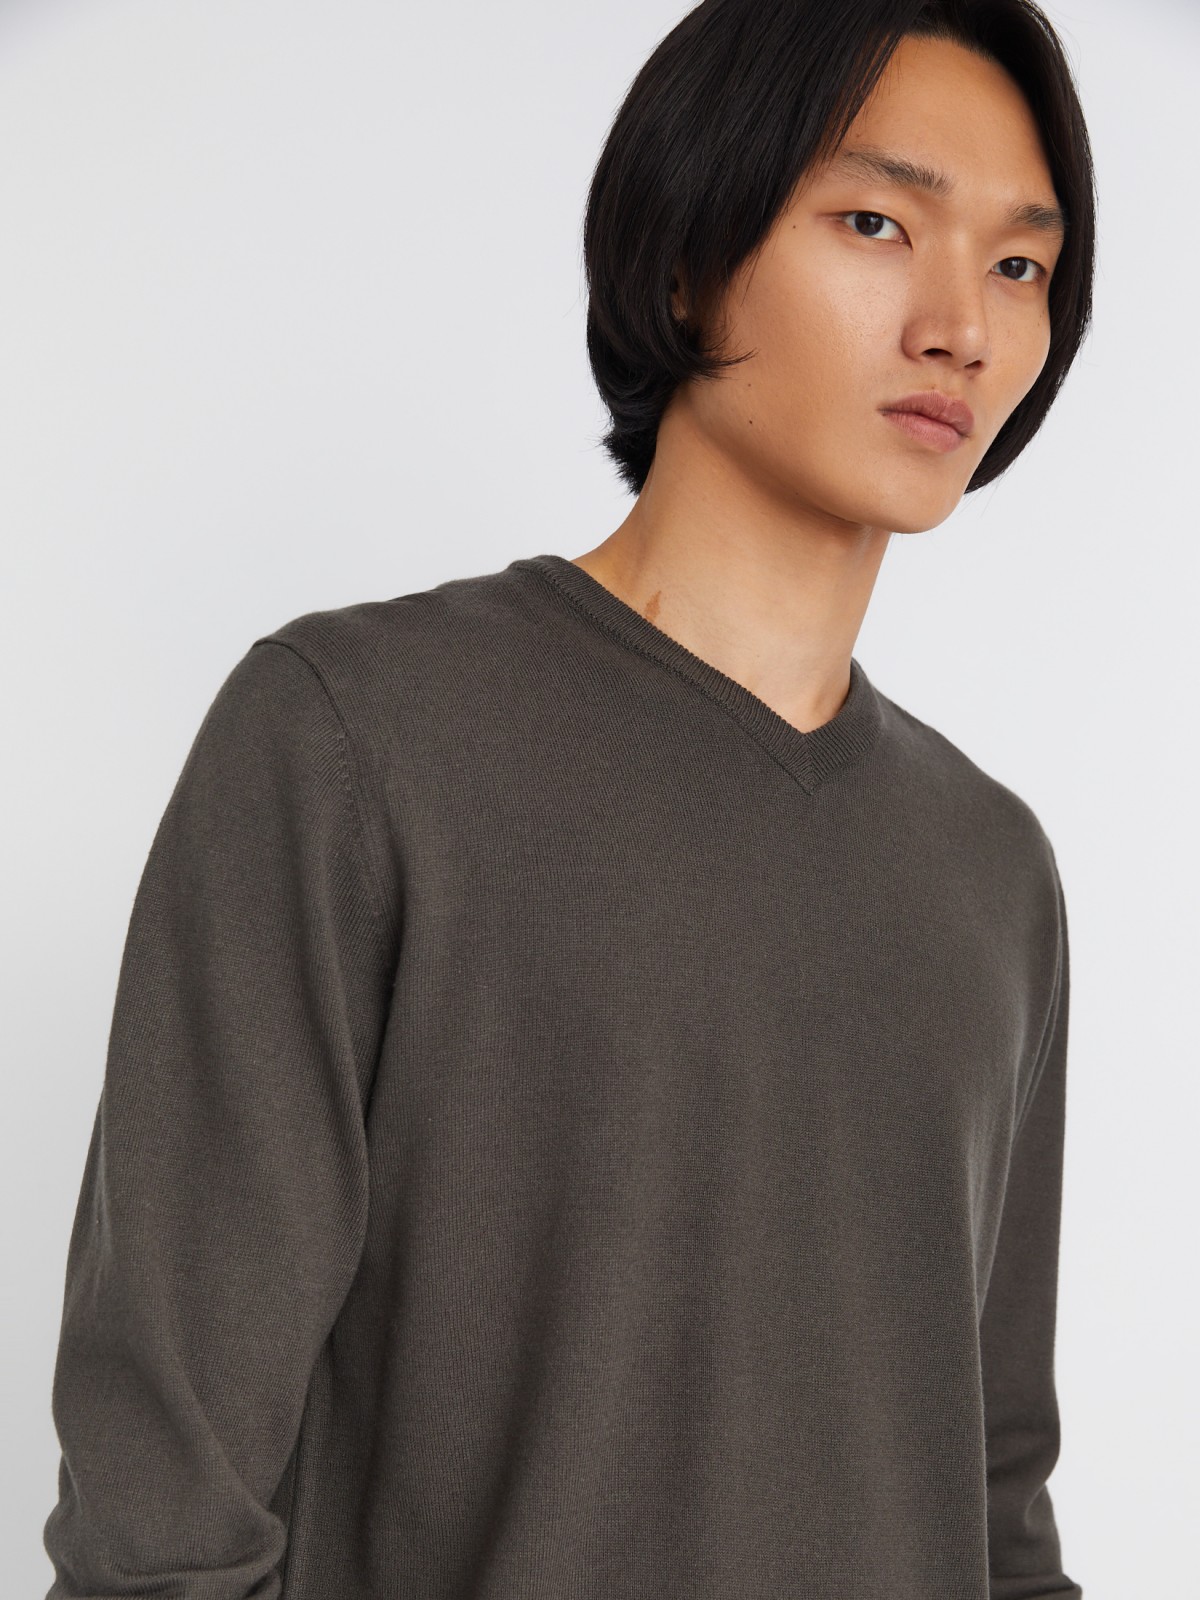 Шерстяной трикотажный пуловер с треугольным вырезом и длинным рукавом zolla 013346163042, цвет темно-серый, размер M - фото 5